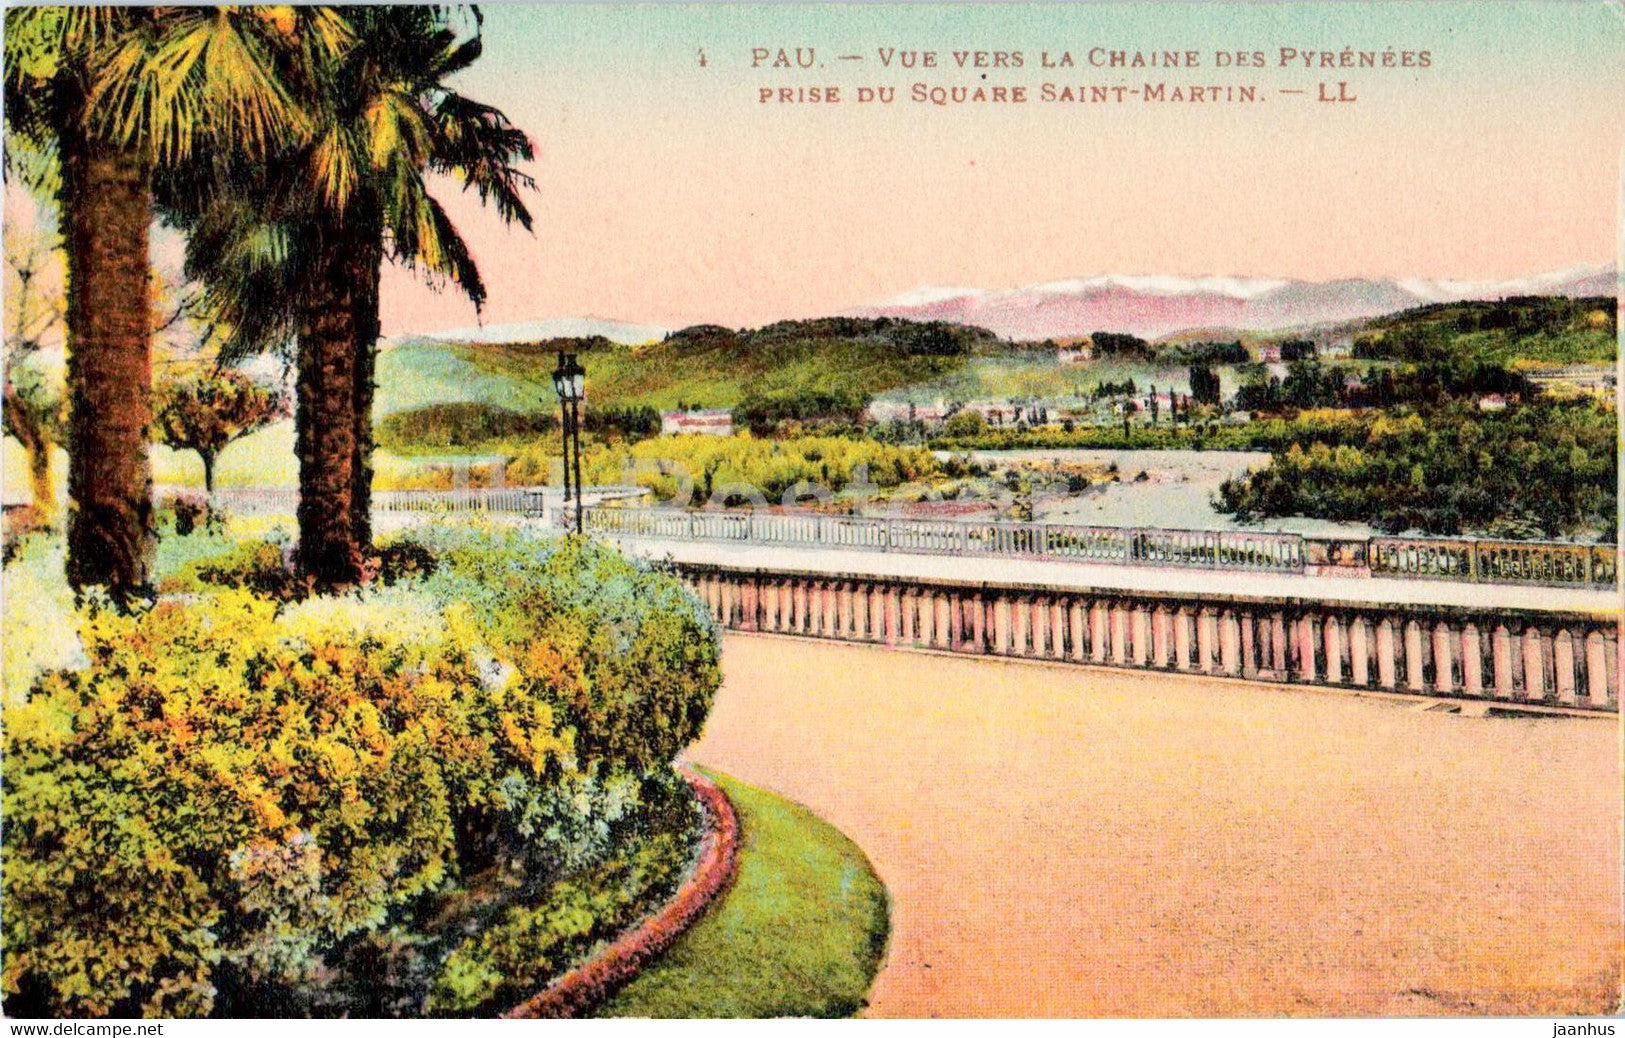 Pau - Vue vers la Chaine des Pyrenees - Prise du Square Saint Martin - 4 - old postcard - France - unused - JH Postcards